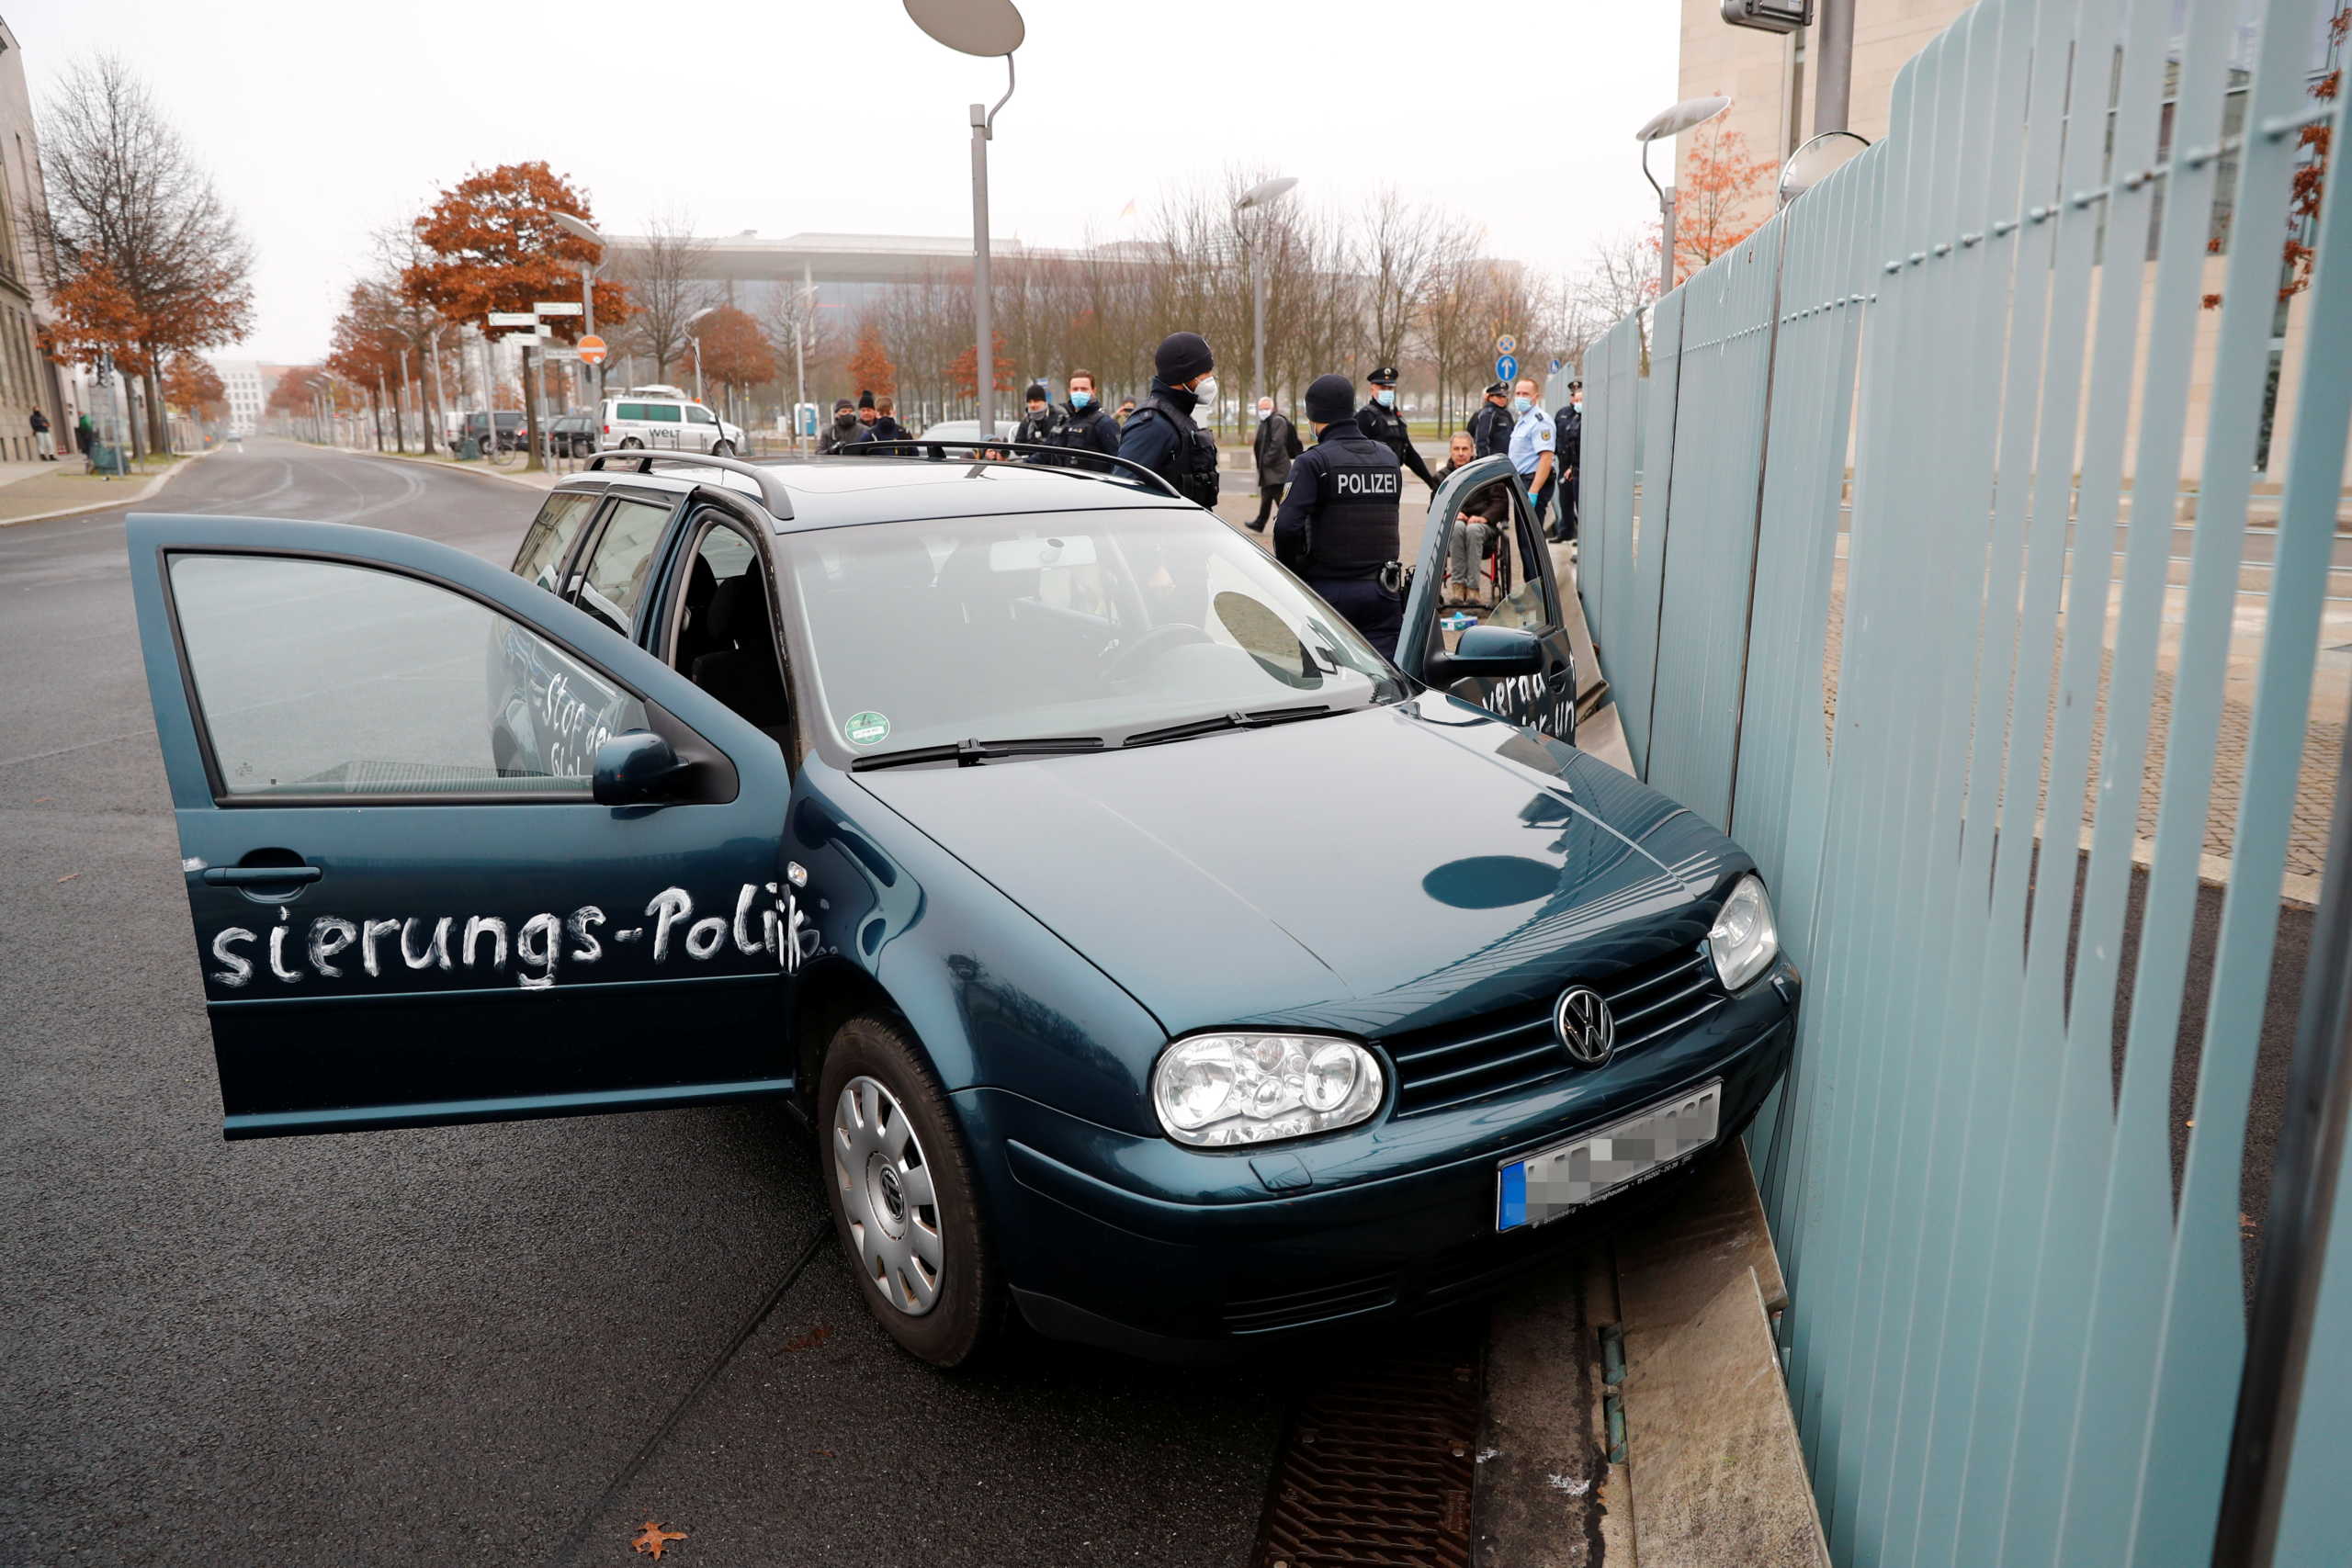 Συναγερμός στο Βερολίνο! Αυτοκίνητο έπεσε στην πόρτα της καγκελαρίας – Γραμμένο “μήνυμα” στις πόρτες (pics)